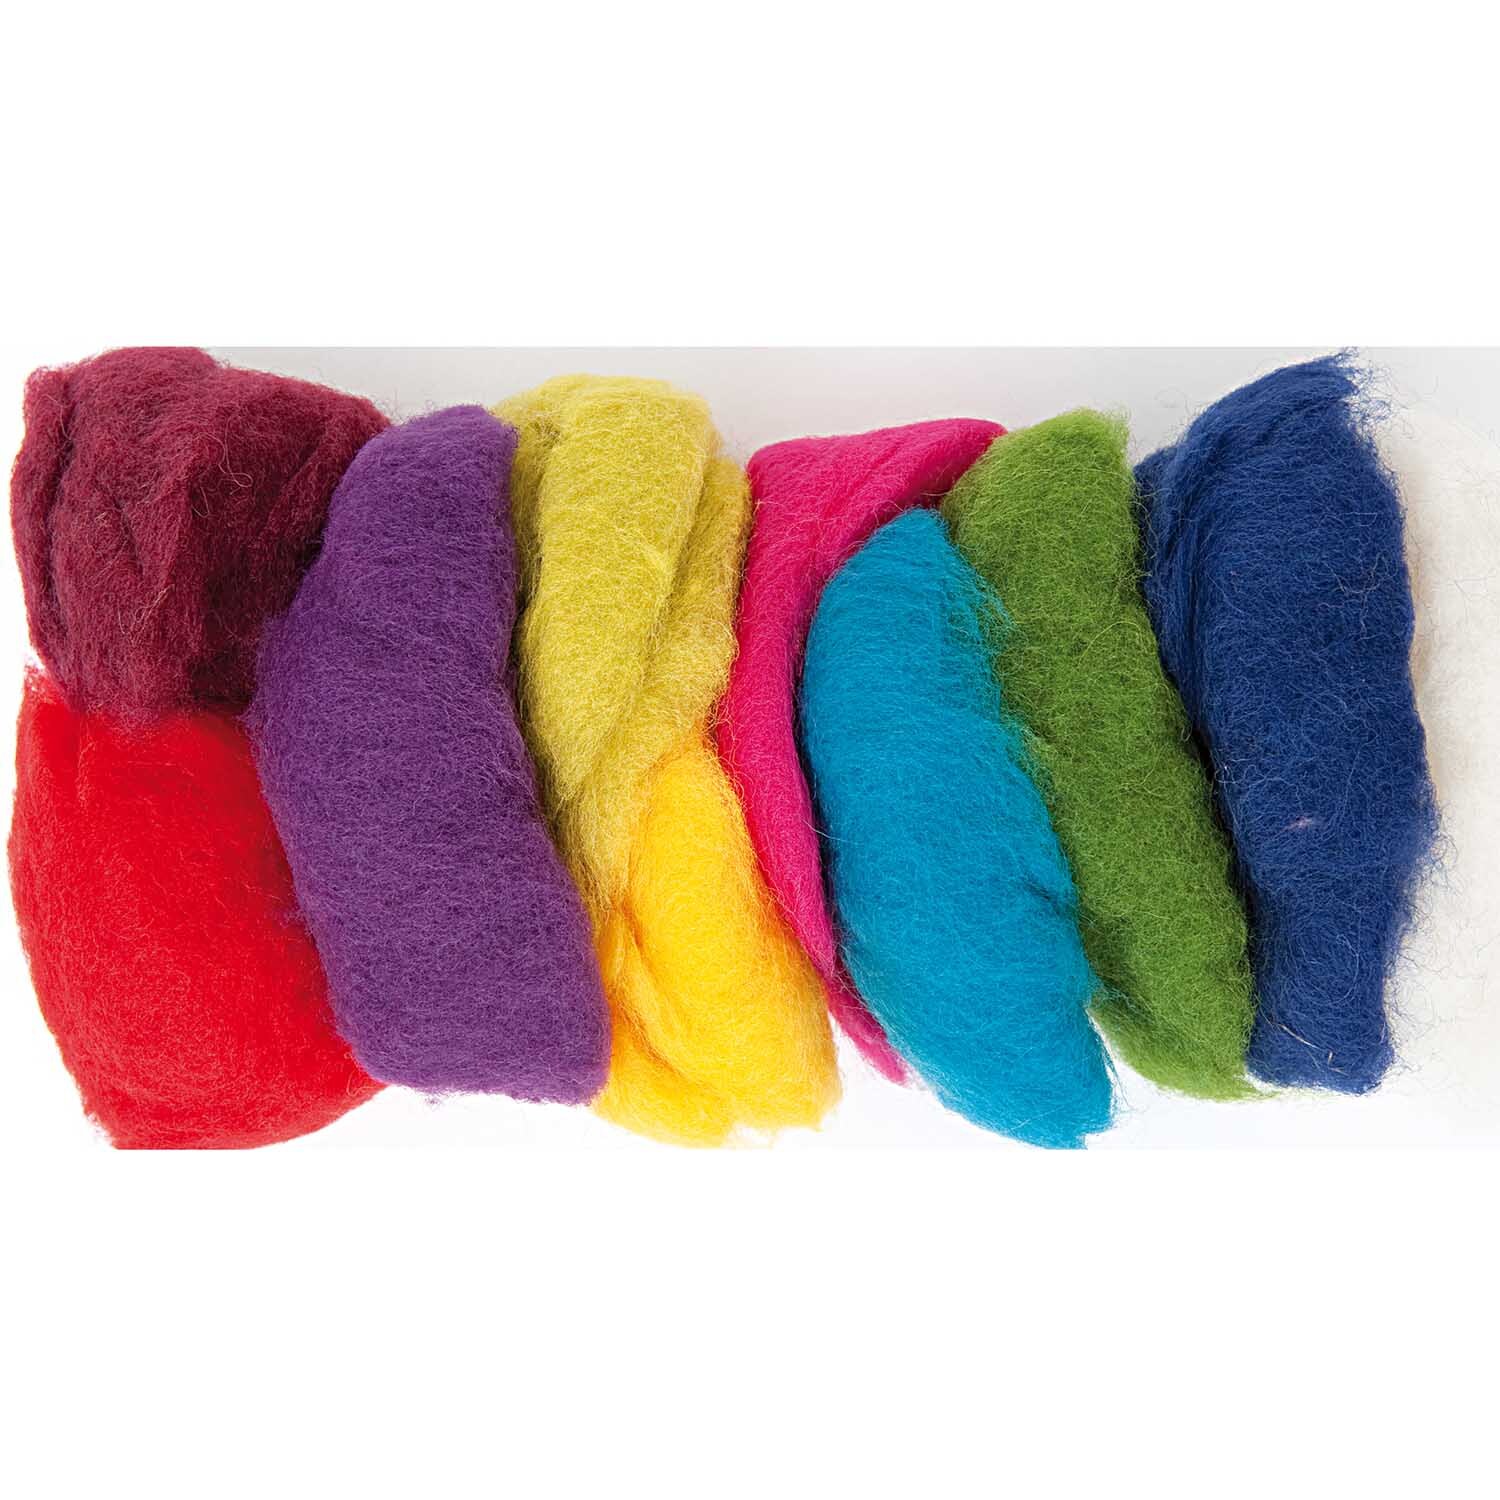 Schafwolle Mix mehrfarbig 100g